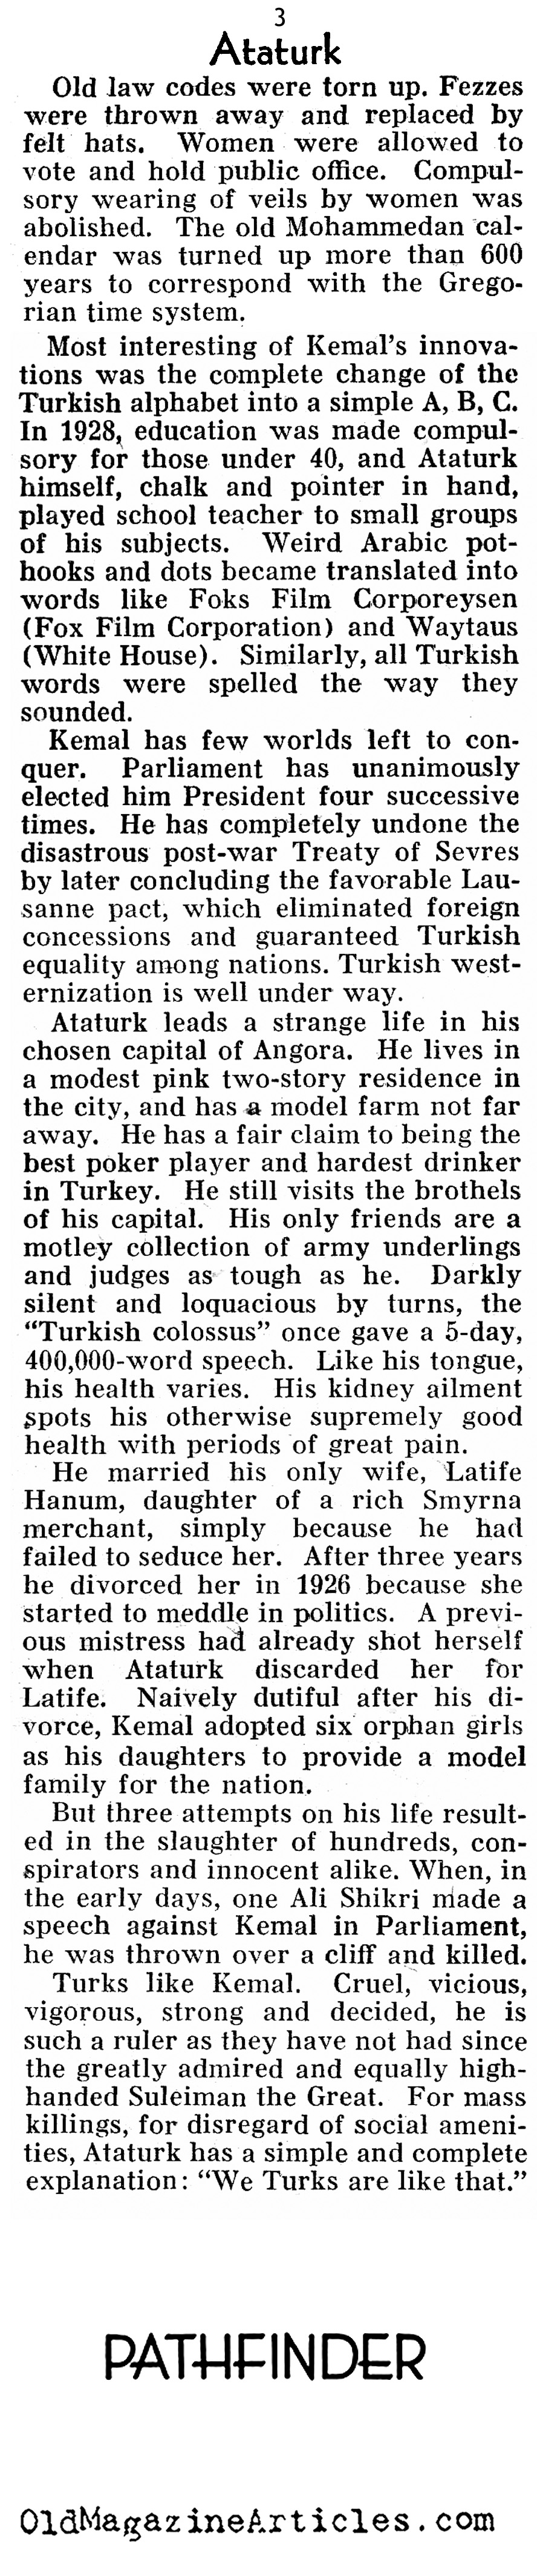 Mustafa Kemal Atatrk (Pathfinder Magazine, 1937)